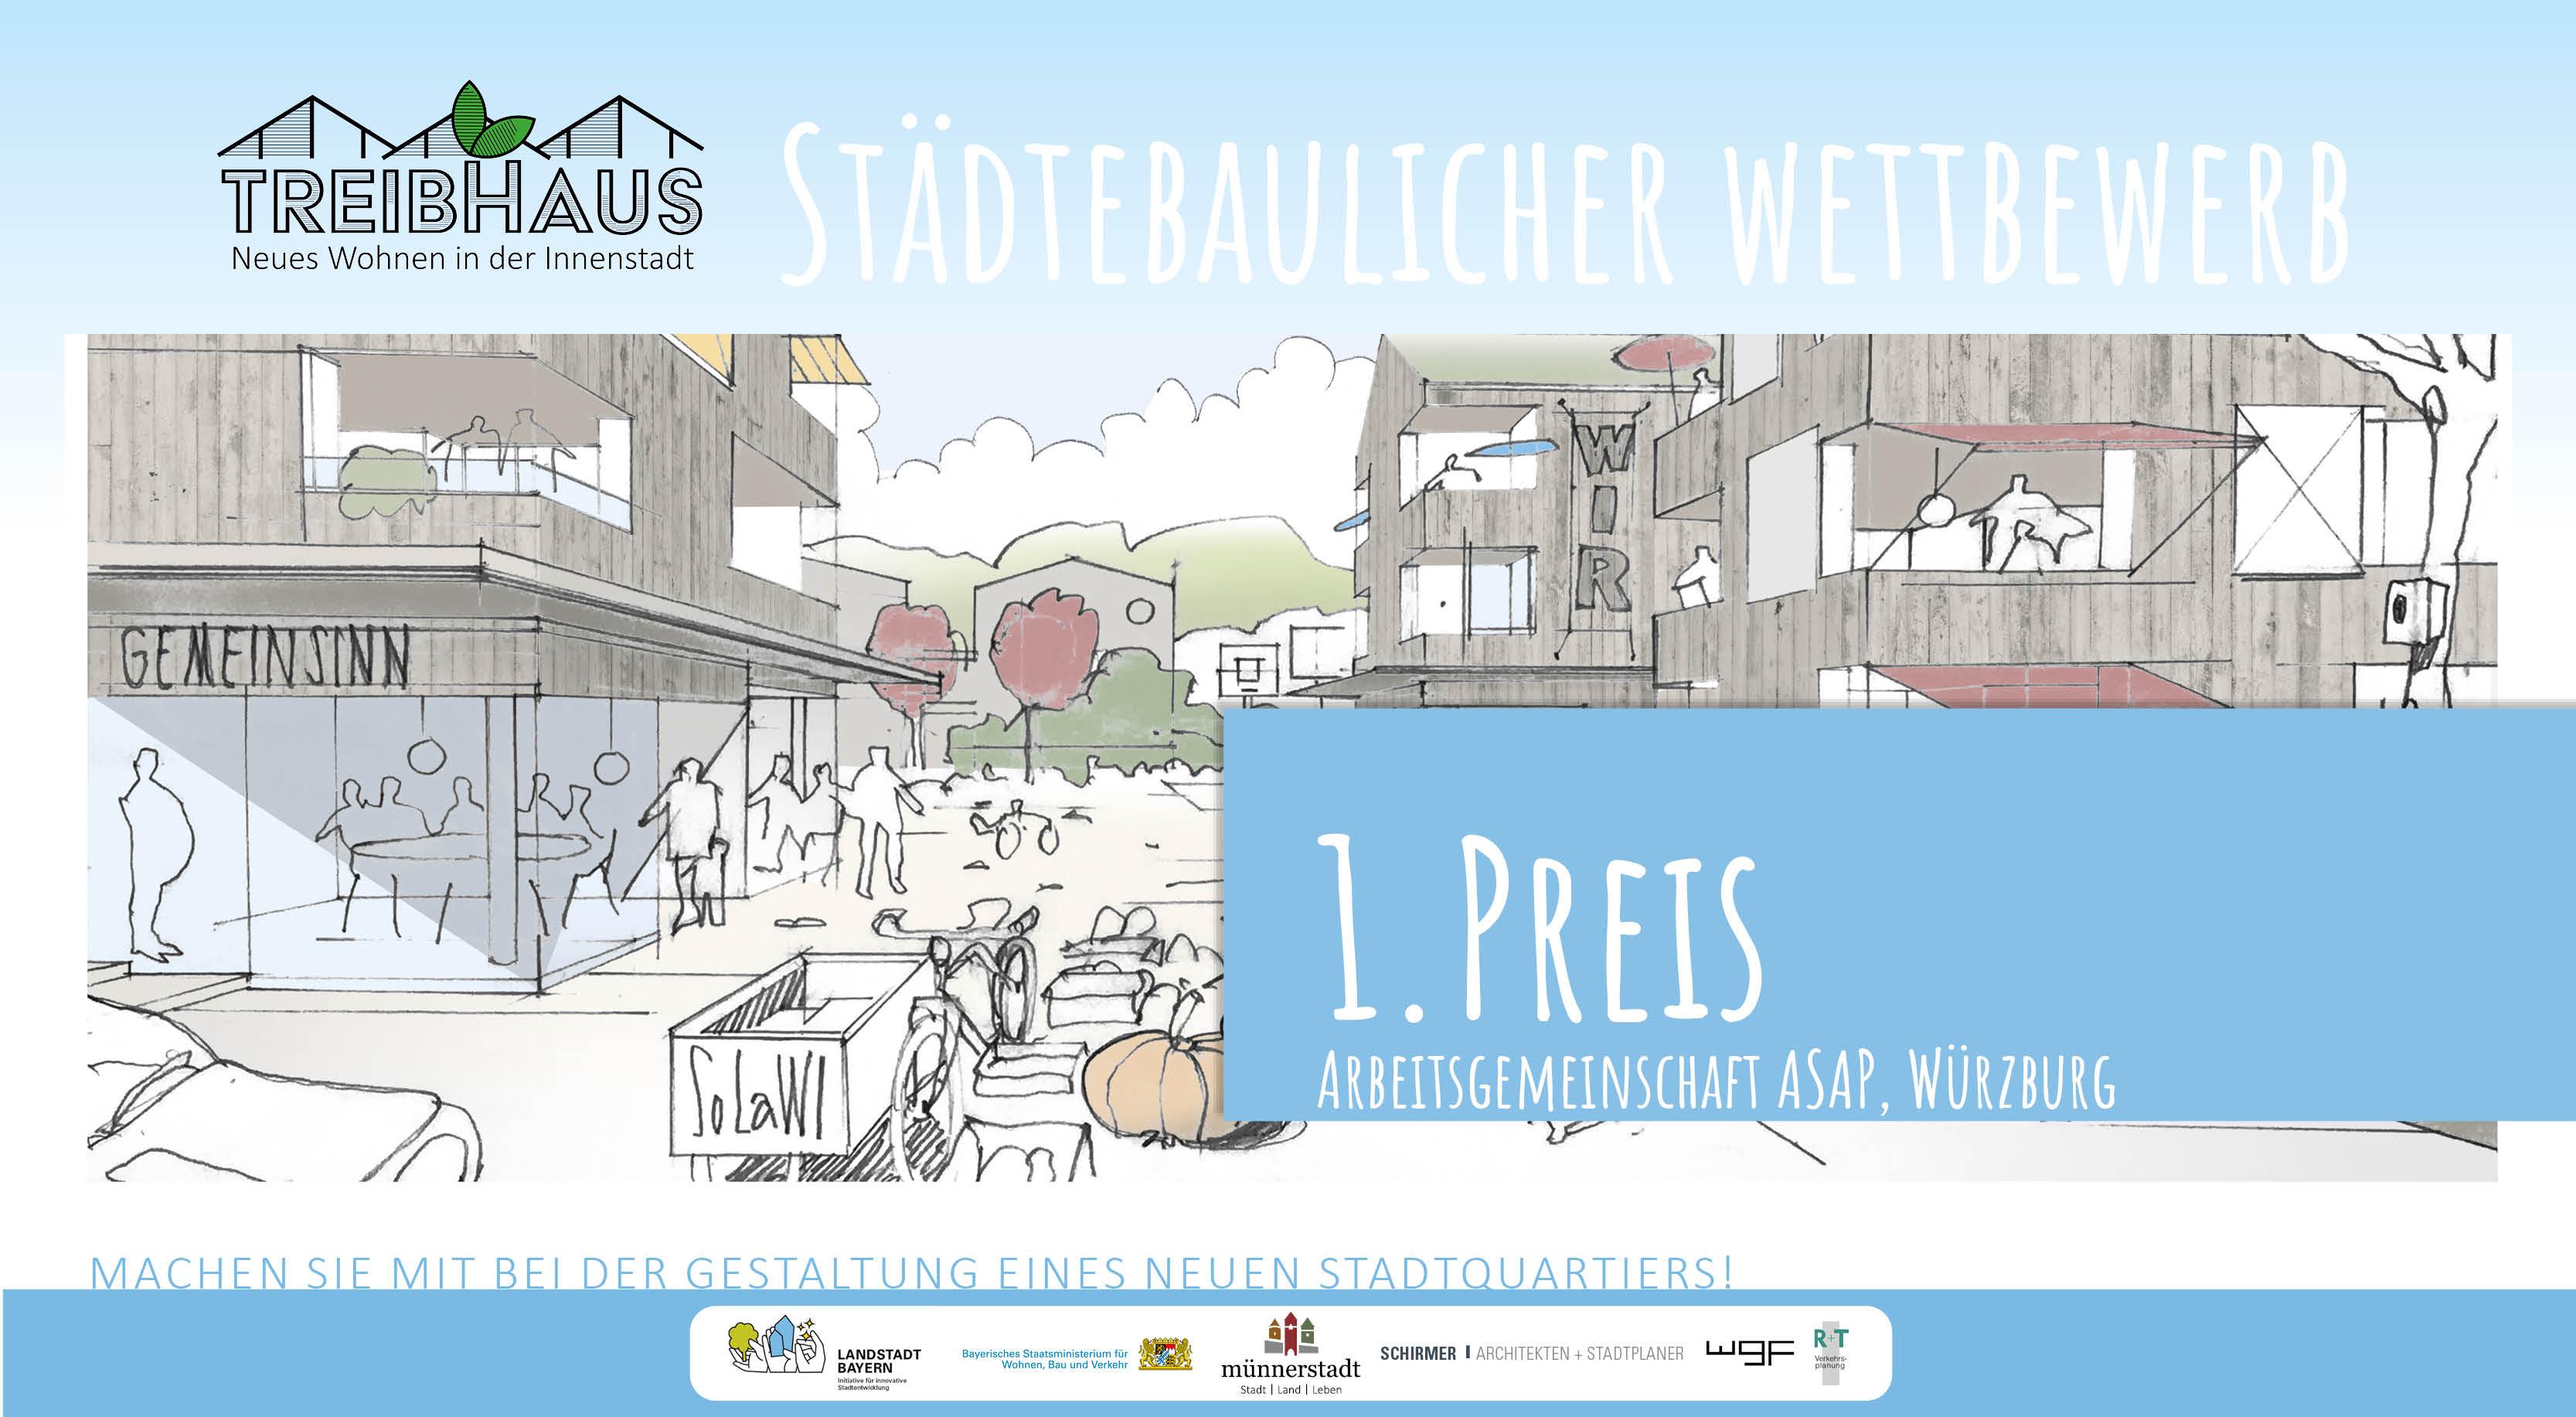 Homepage Treibhaus 1. Preis Arbeitsgemeinschaft ASAP mit Dischinger Zierer, Wamsler Rohloff Qirzmüller und FreiRaumArchitekten Stadtplaner, Würzburg.jpg